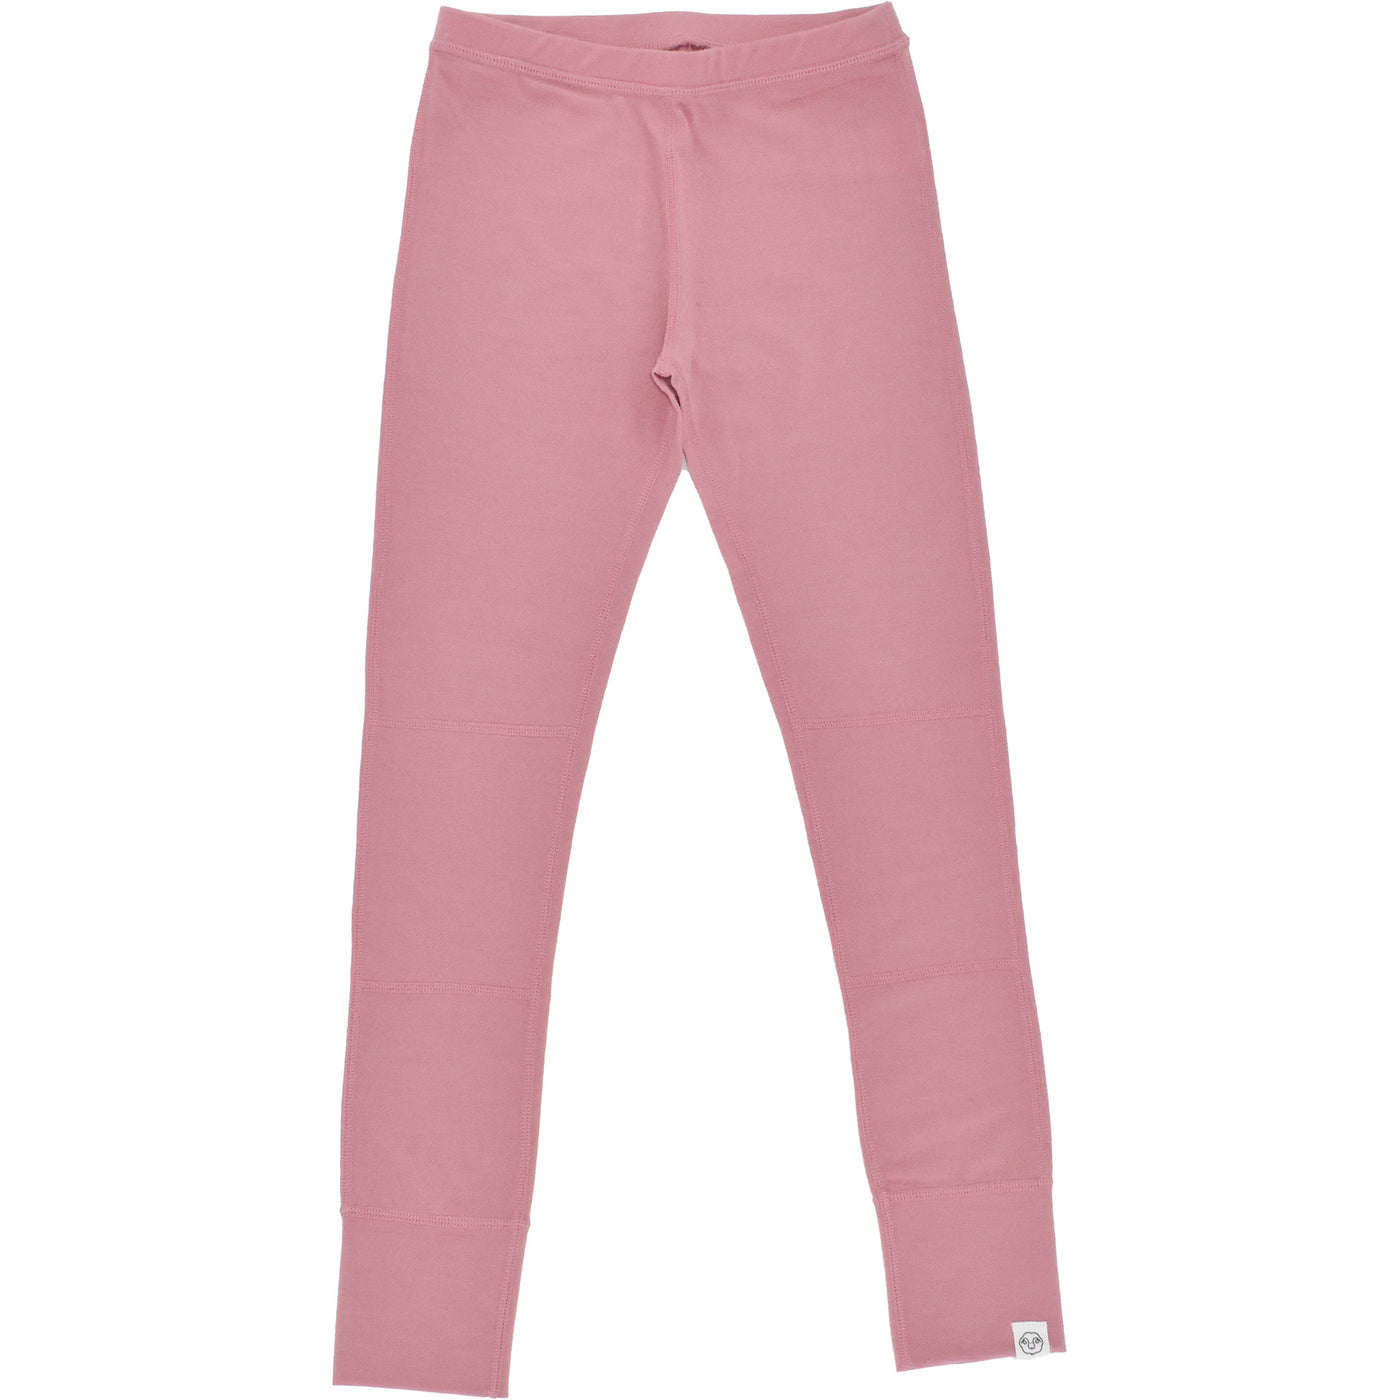 Kids Merino Wool Base Layer, Leggings, Blush Pink – Woolino